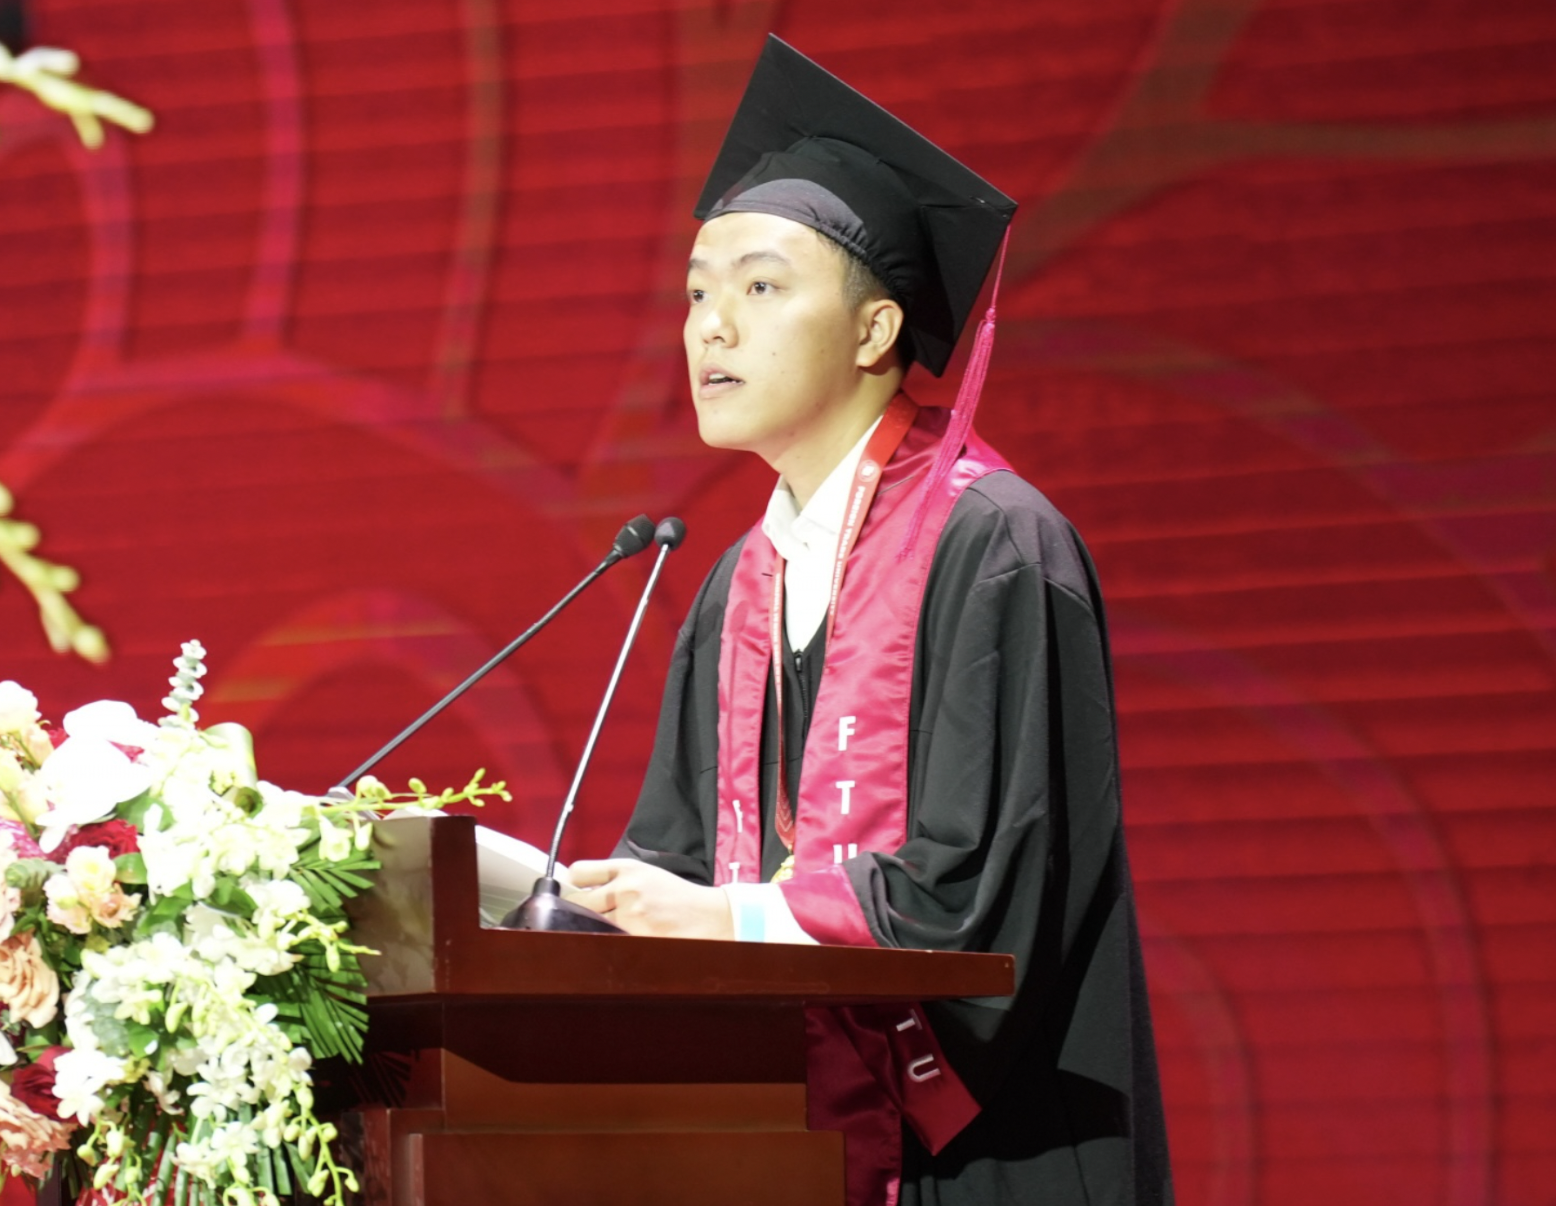 Bài phát biểu đáng nhớ của nam sinh Trường Đại học Ngoại thương trong lễ tốt nghiệp- Ảnh 1.